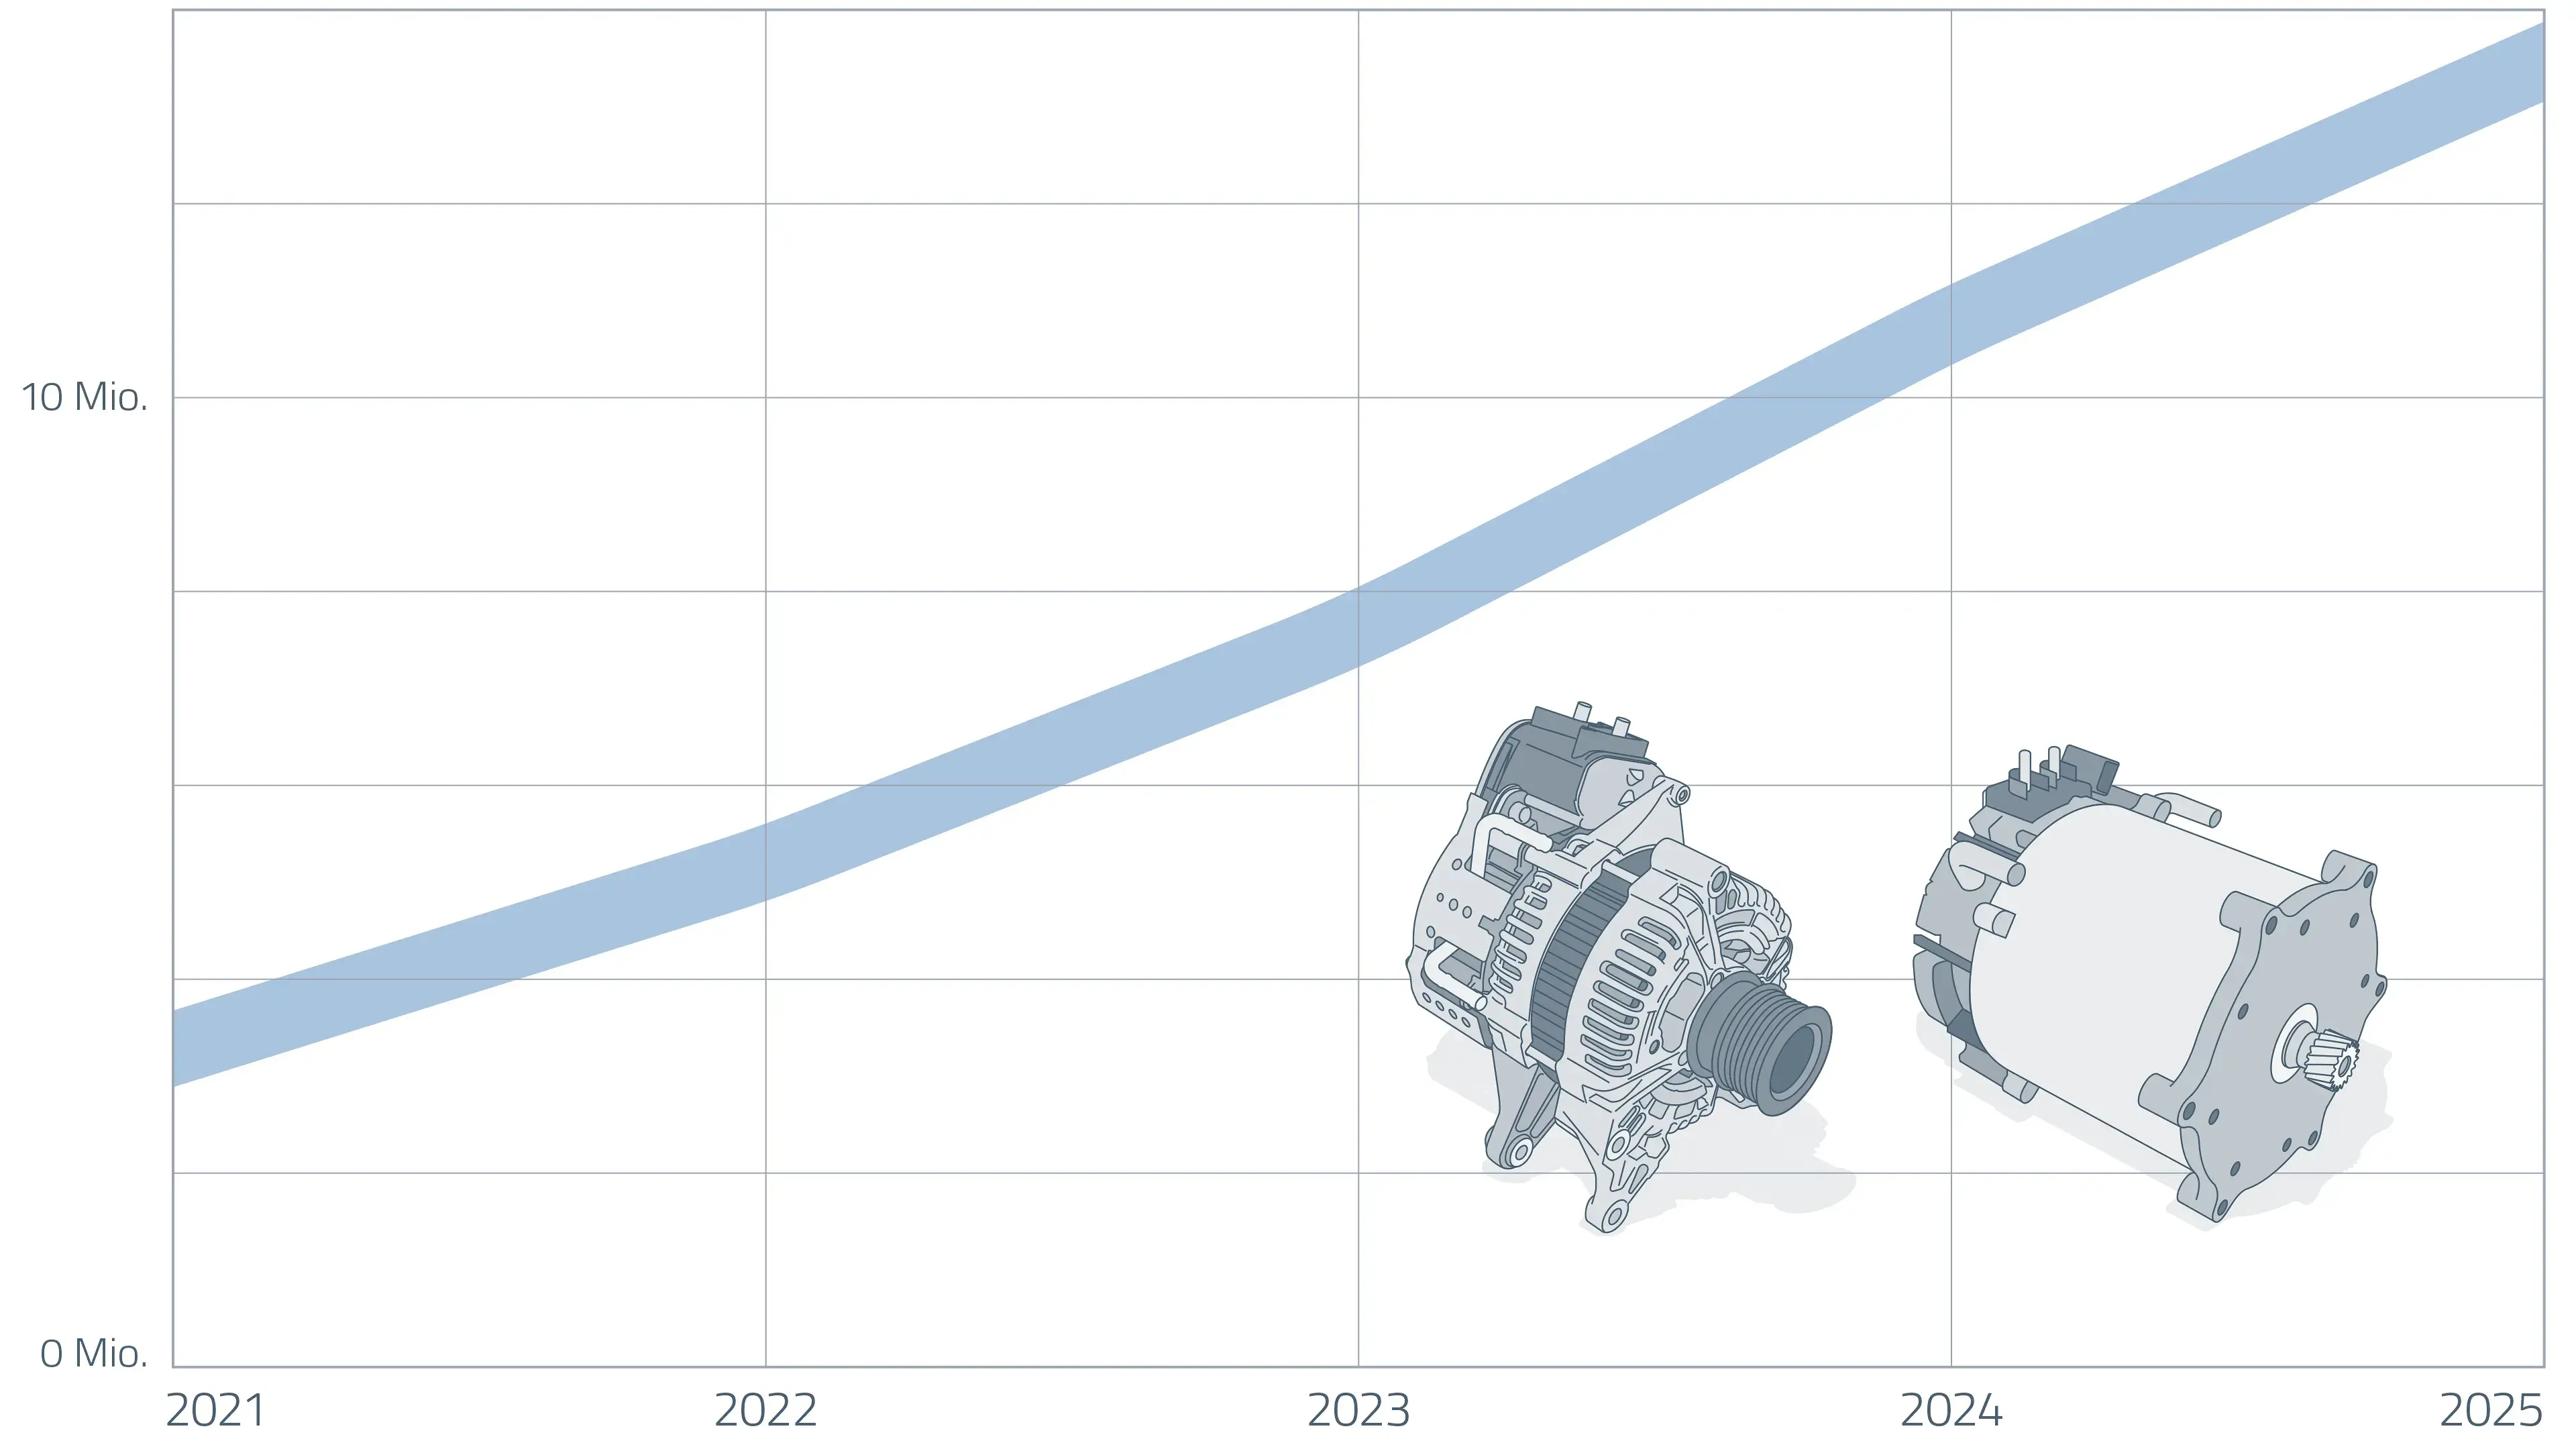 Grafik: Wachstumsprognose Fahrzeuge mit 48V/Mild-Hybrid Antriebs-Technologie 